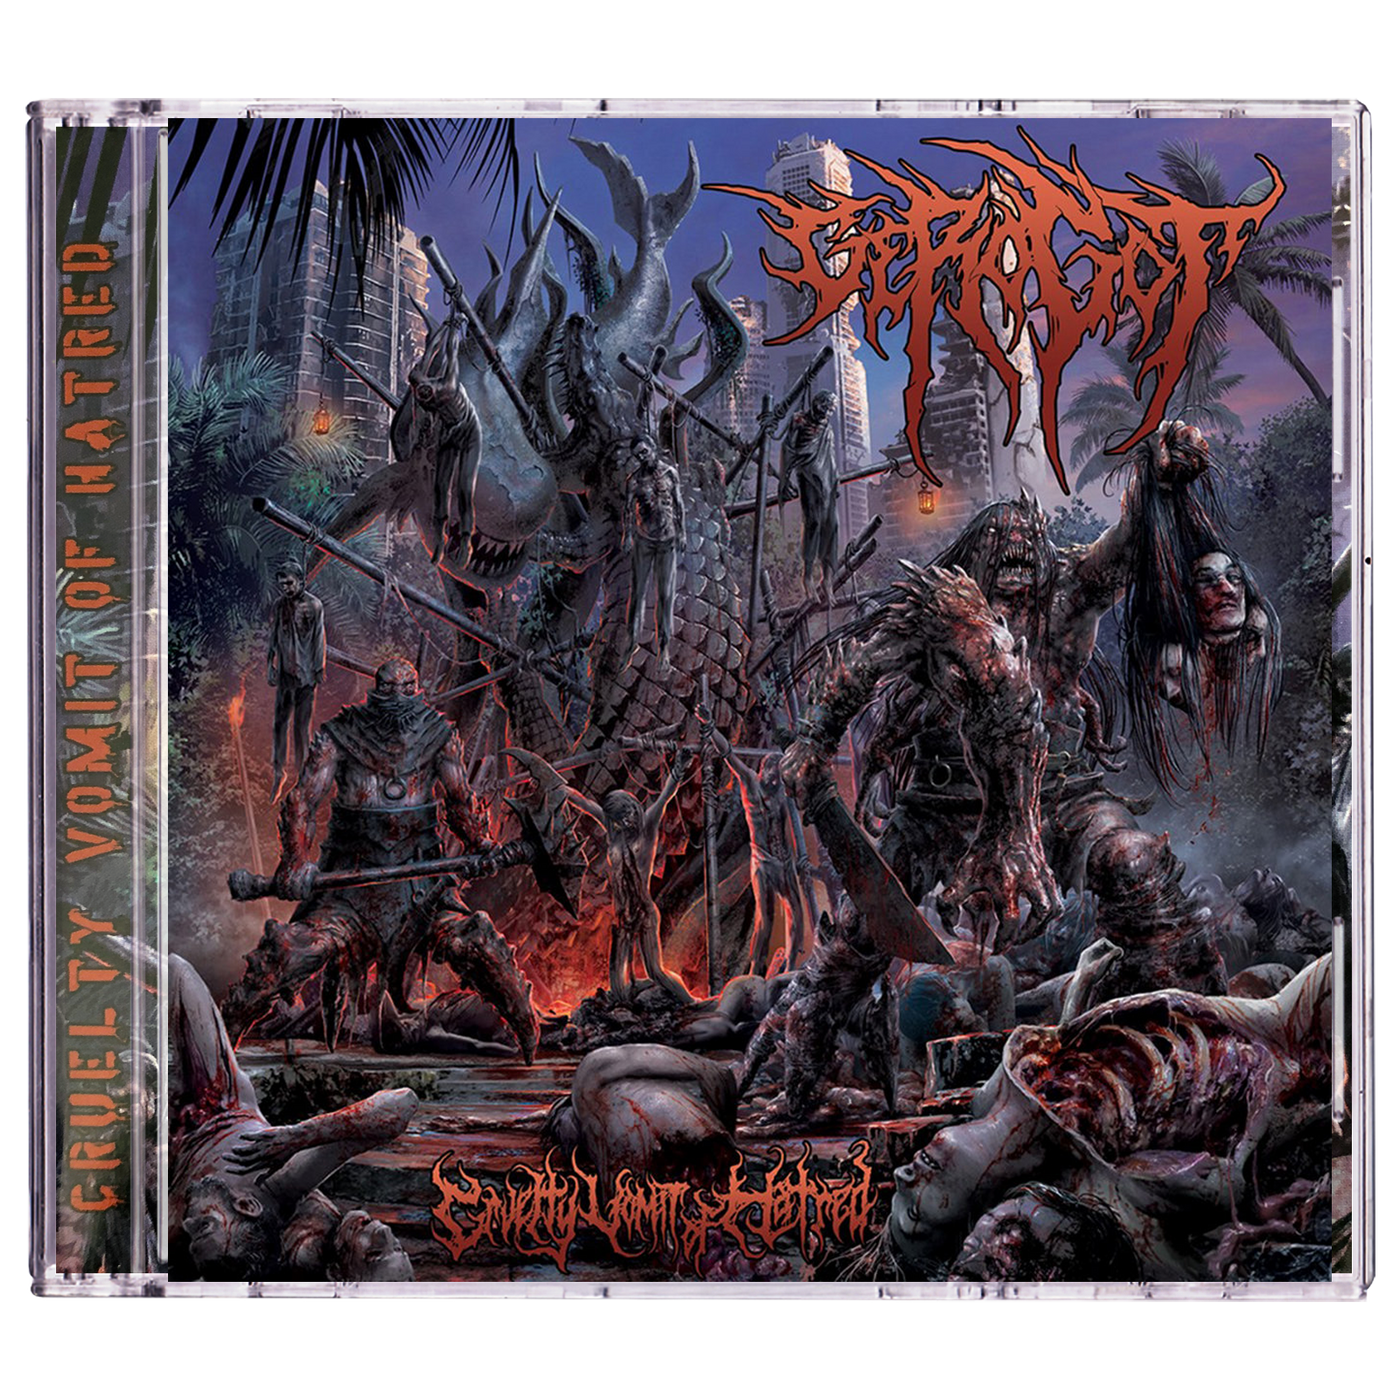 Gerogot 'Cruelty Vomit Of Hatred' CD